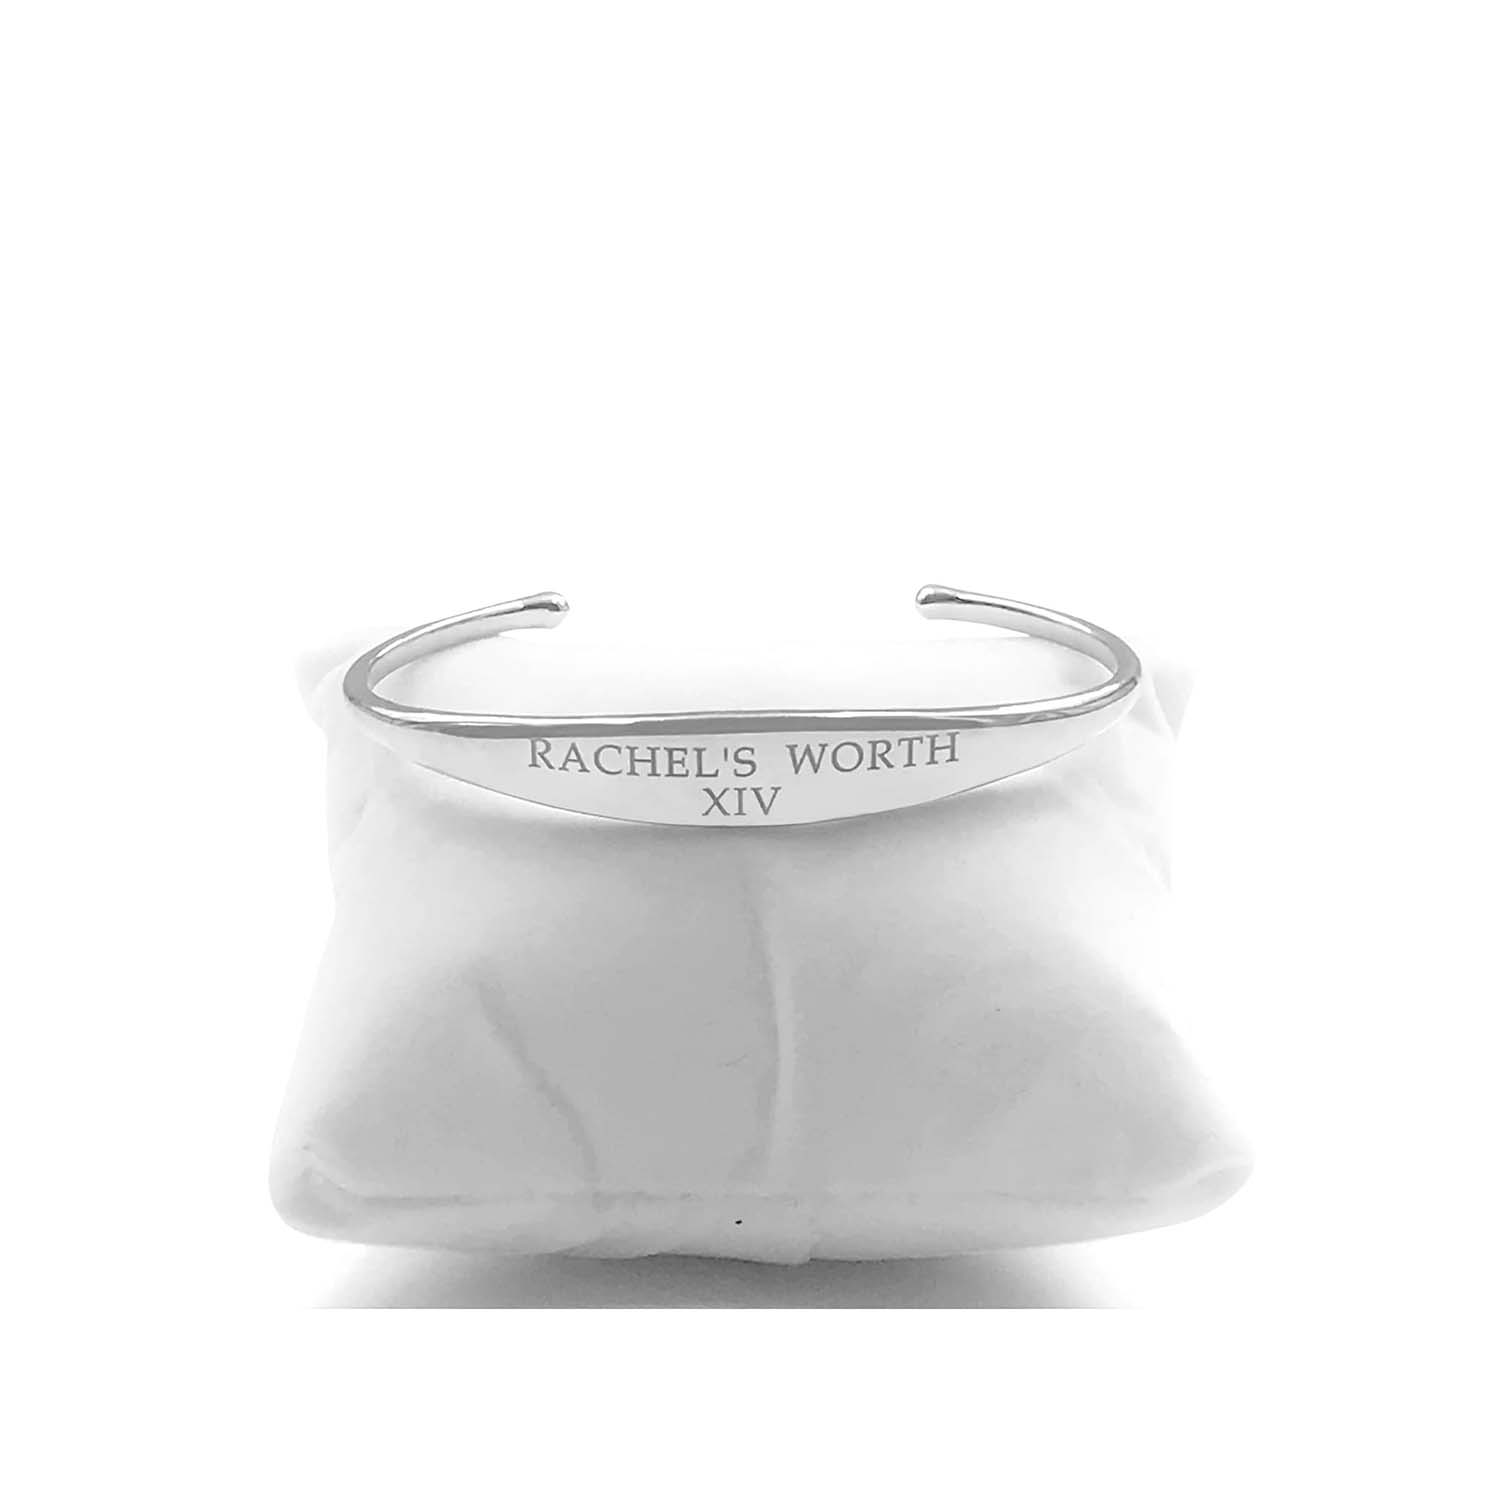 Rachel's Worth XIV Cuff Bracelet in Sterling Silver